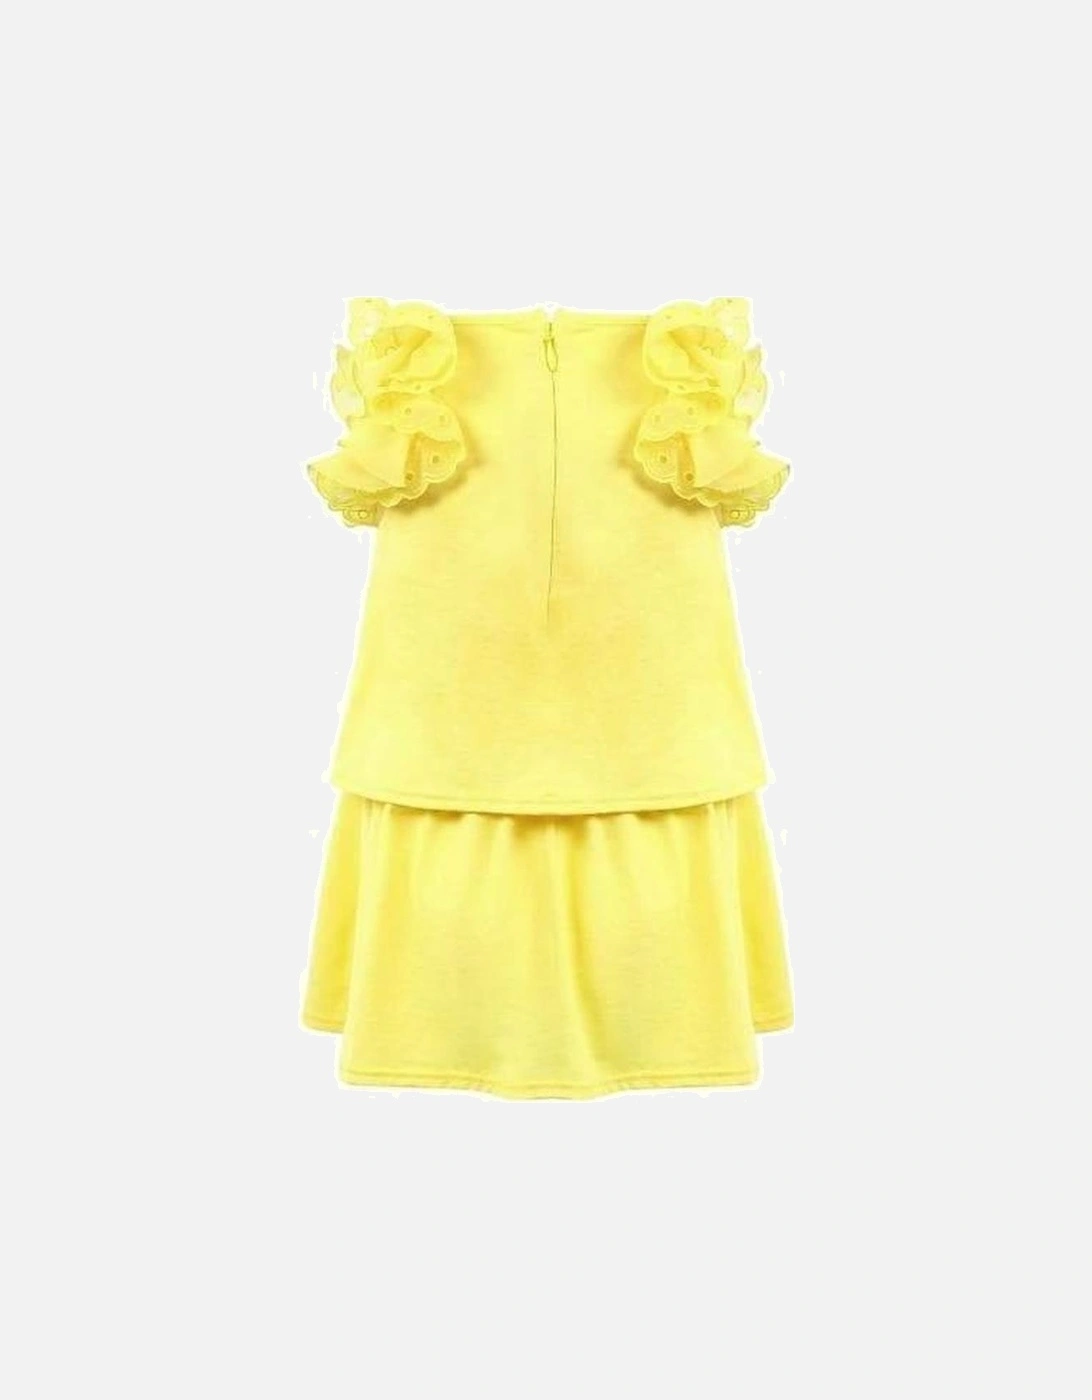 Girls Yellow Dress